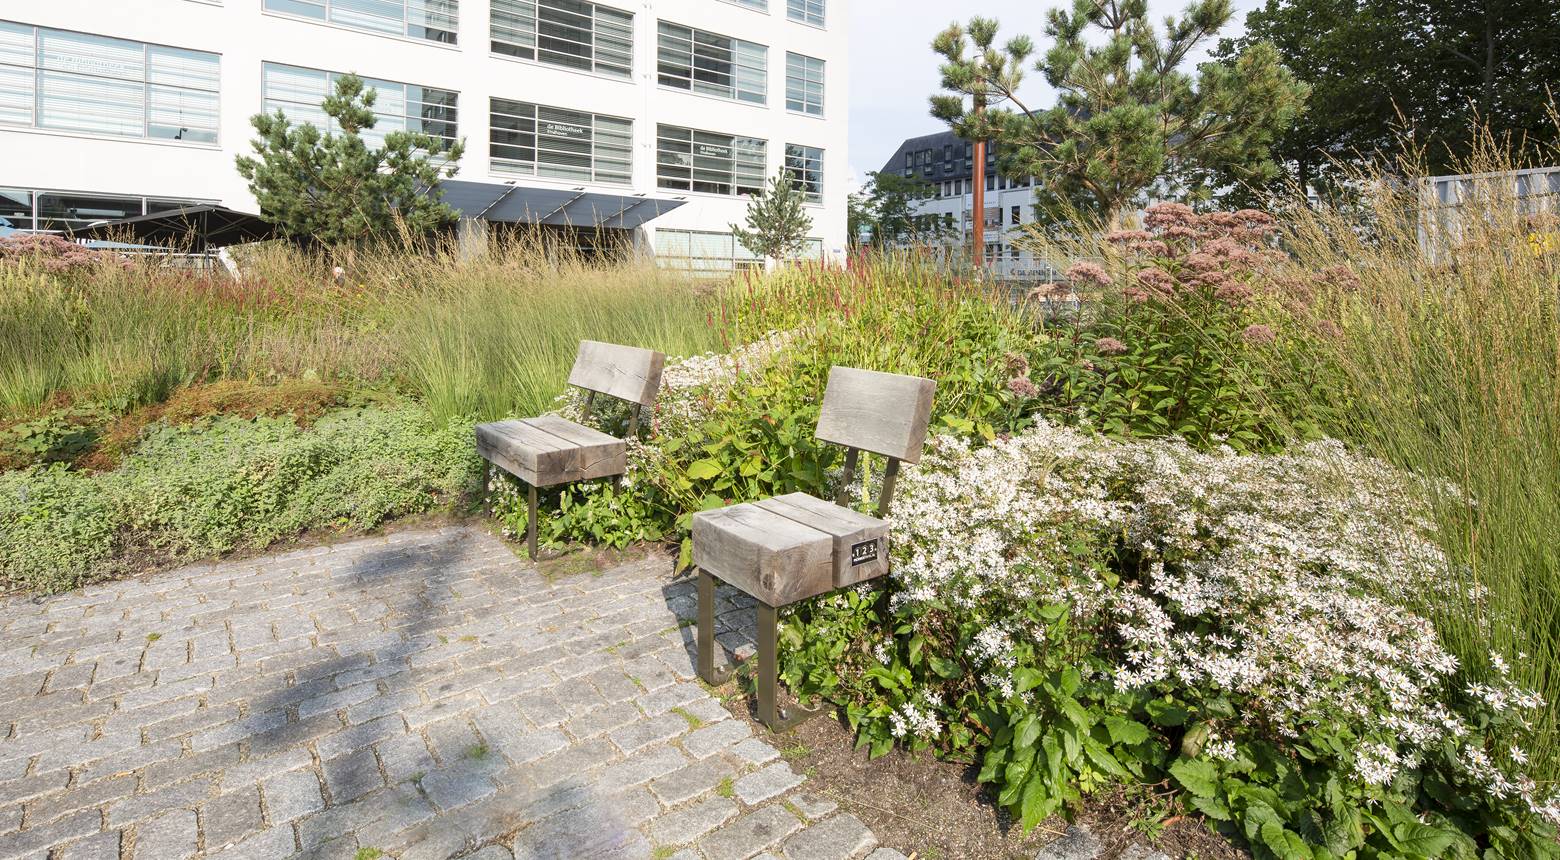 Project Clausplein - Donker Design - Een klimaatbestendig stadspark waar het fijn verblijven is